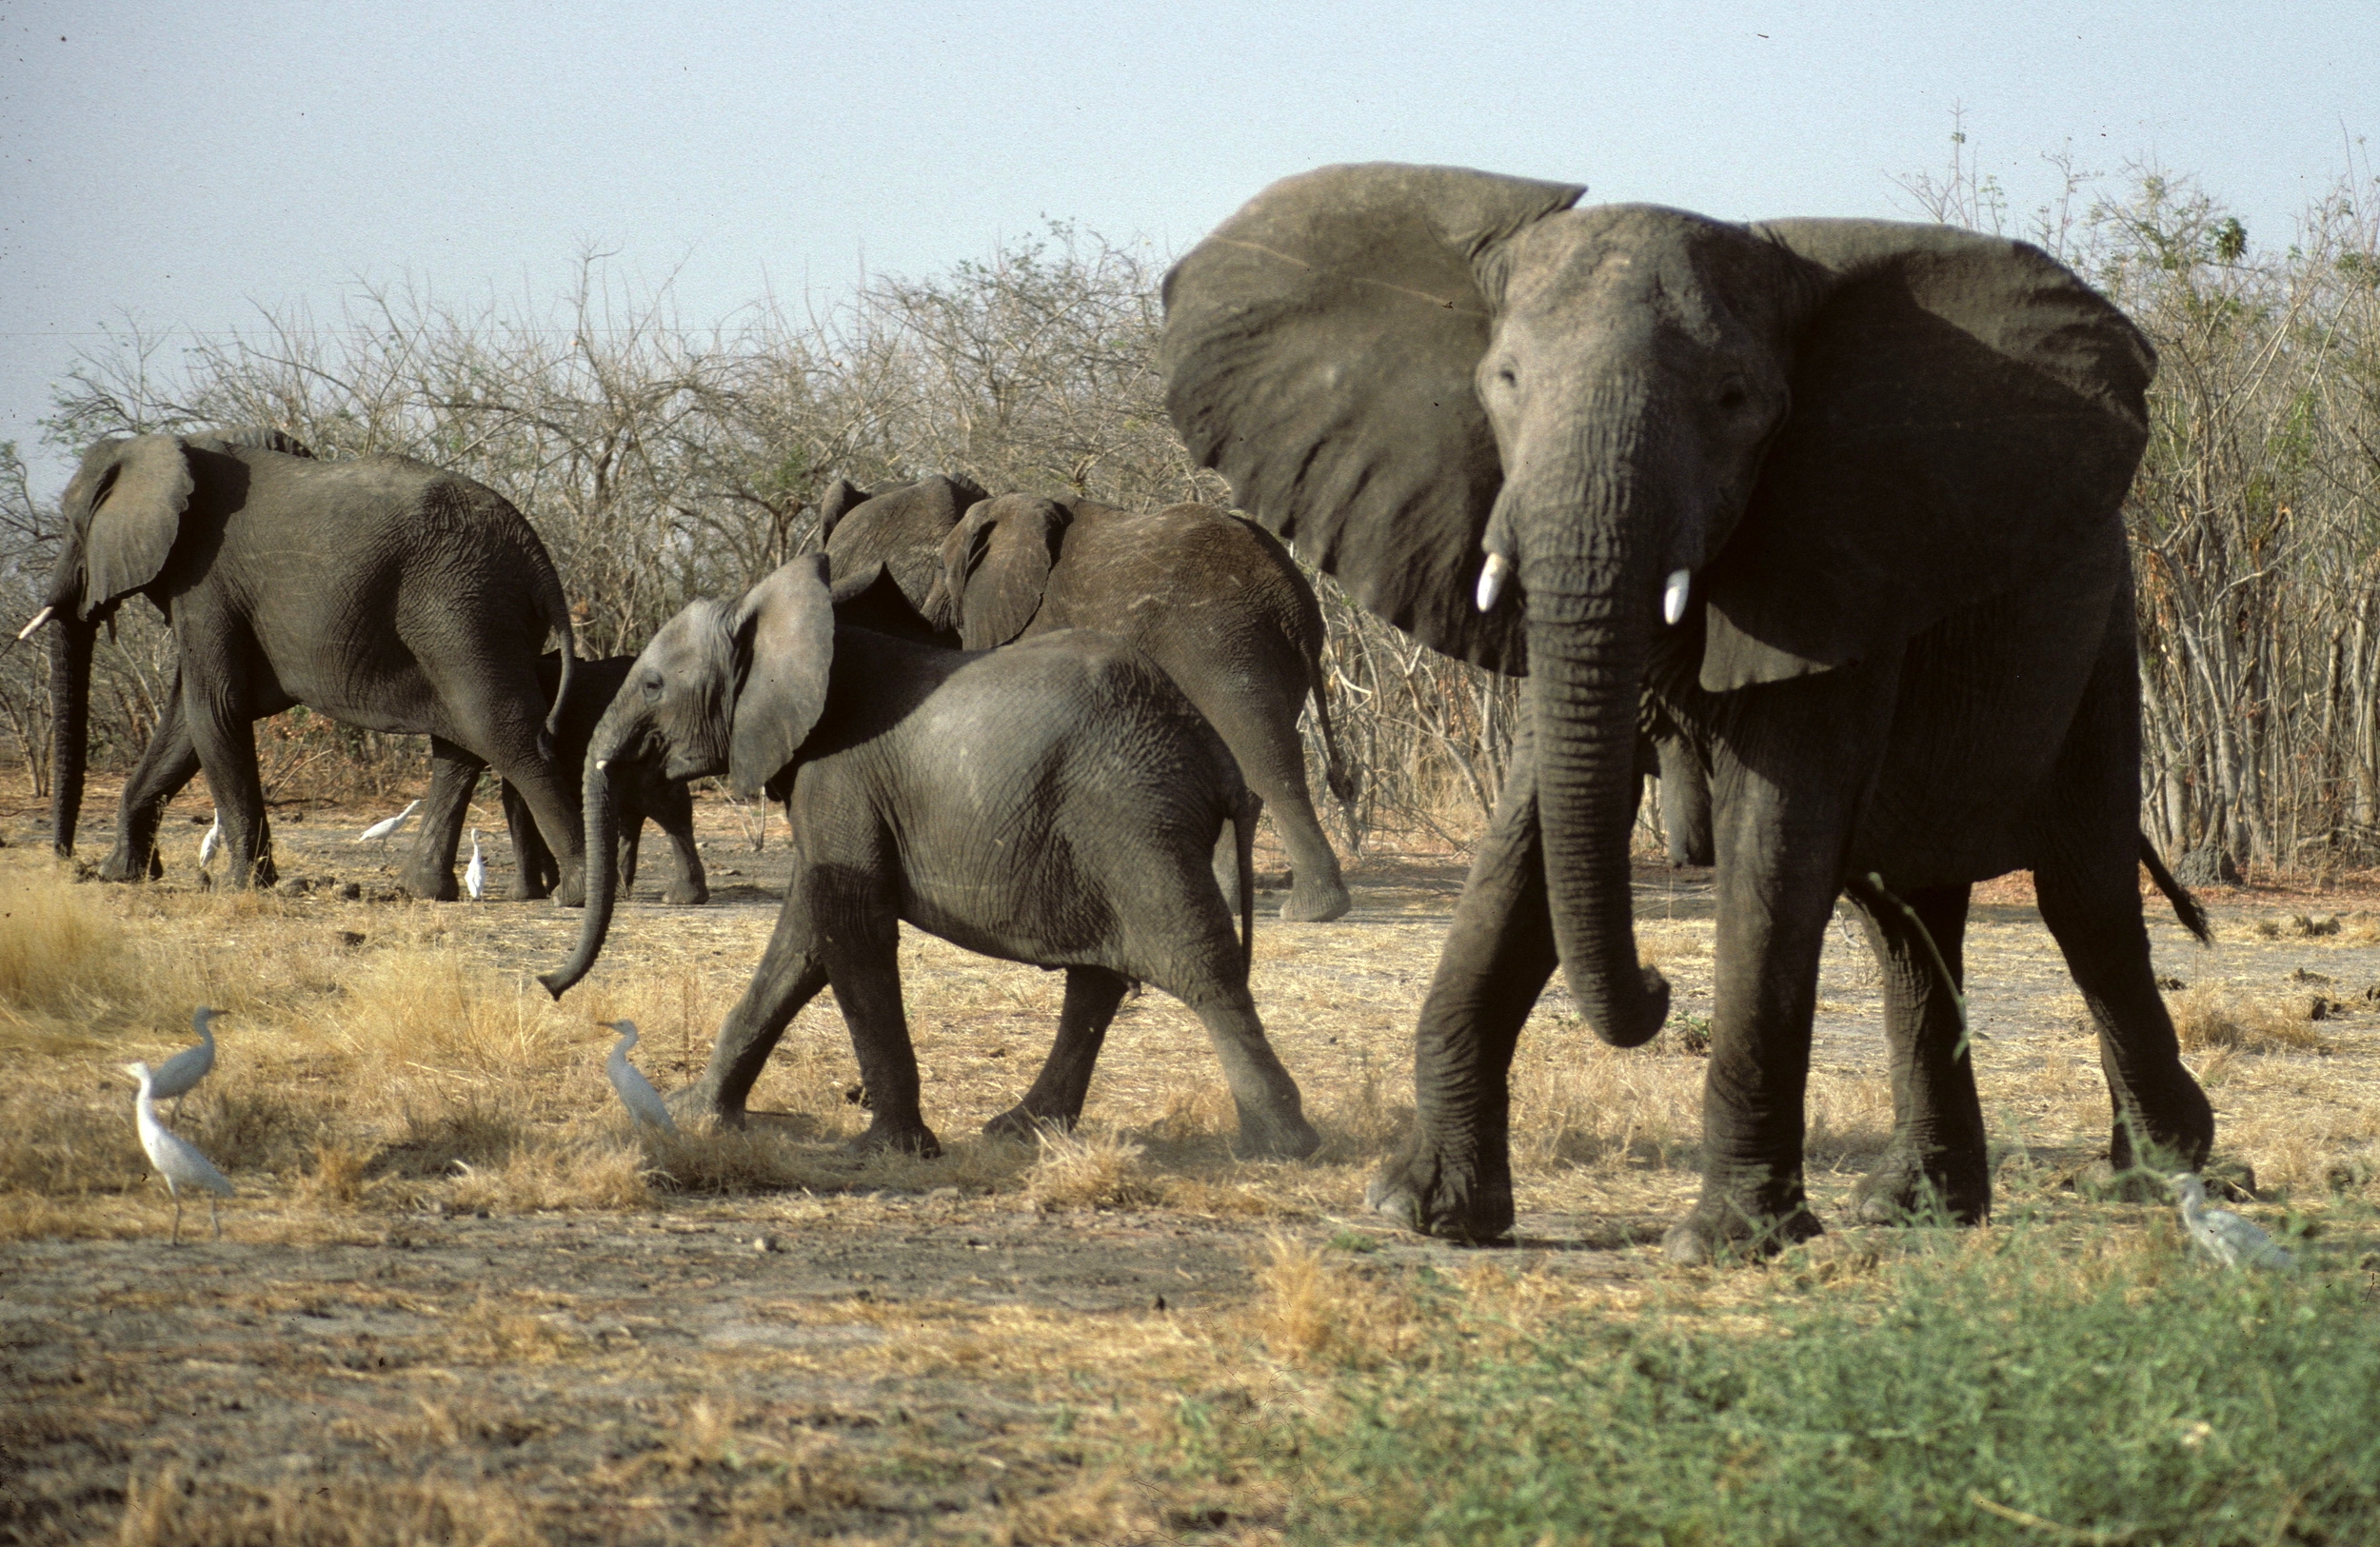 Elephants de Waza